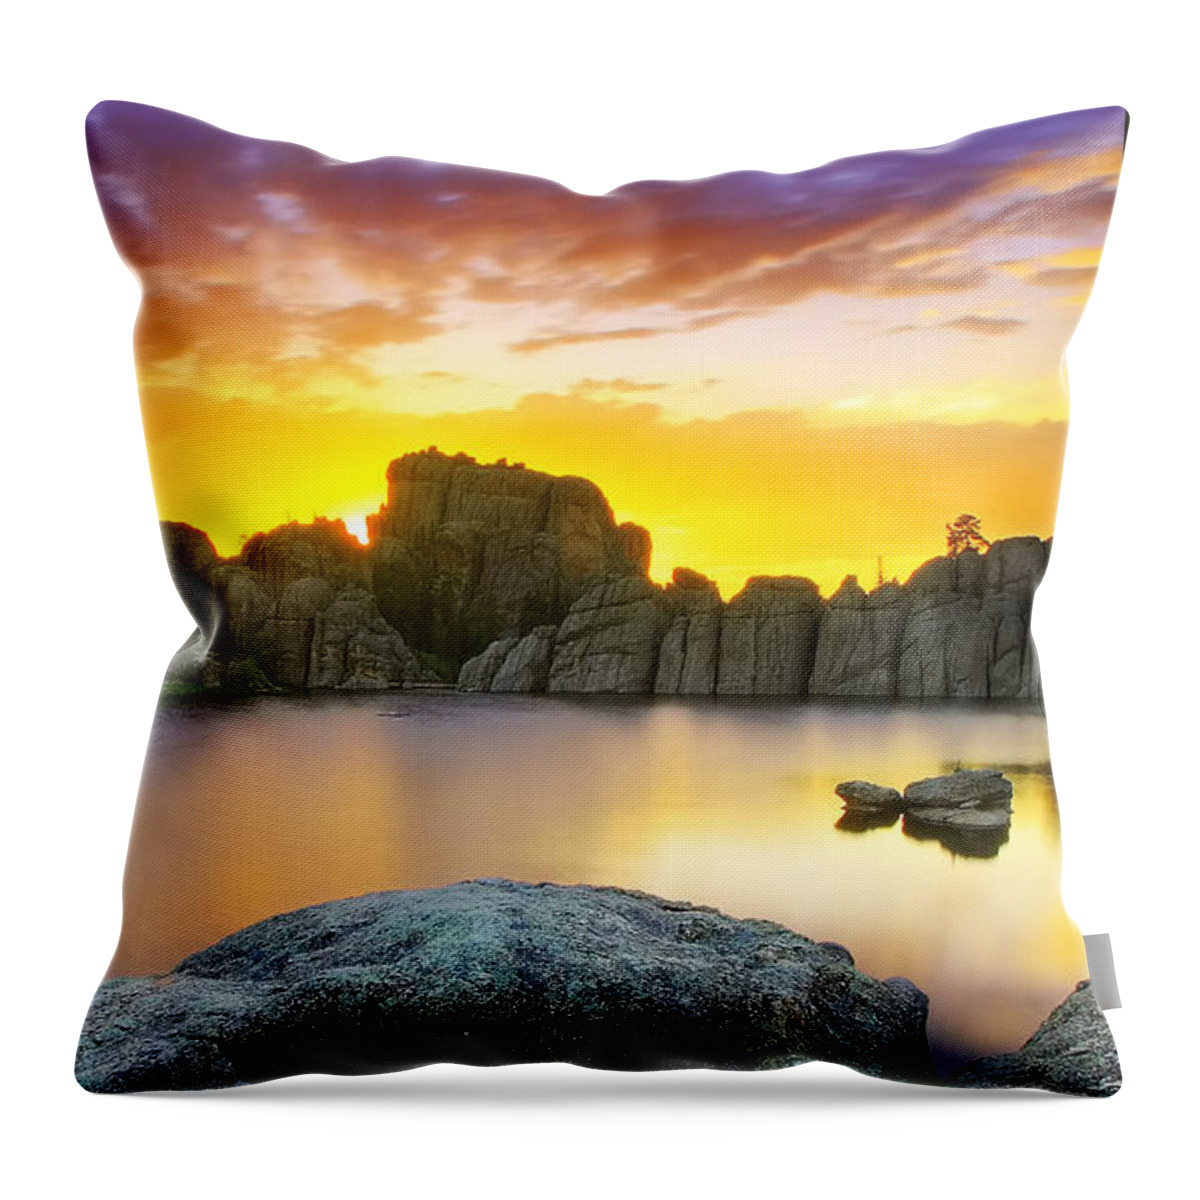 South Dakota Throw Pillow featuring the photograph Sylvan Lake Sunset by Kadek Susanto